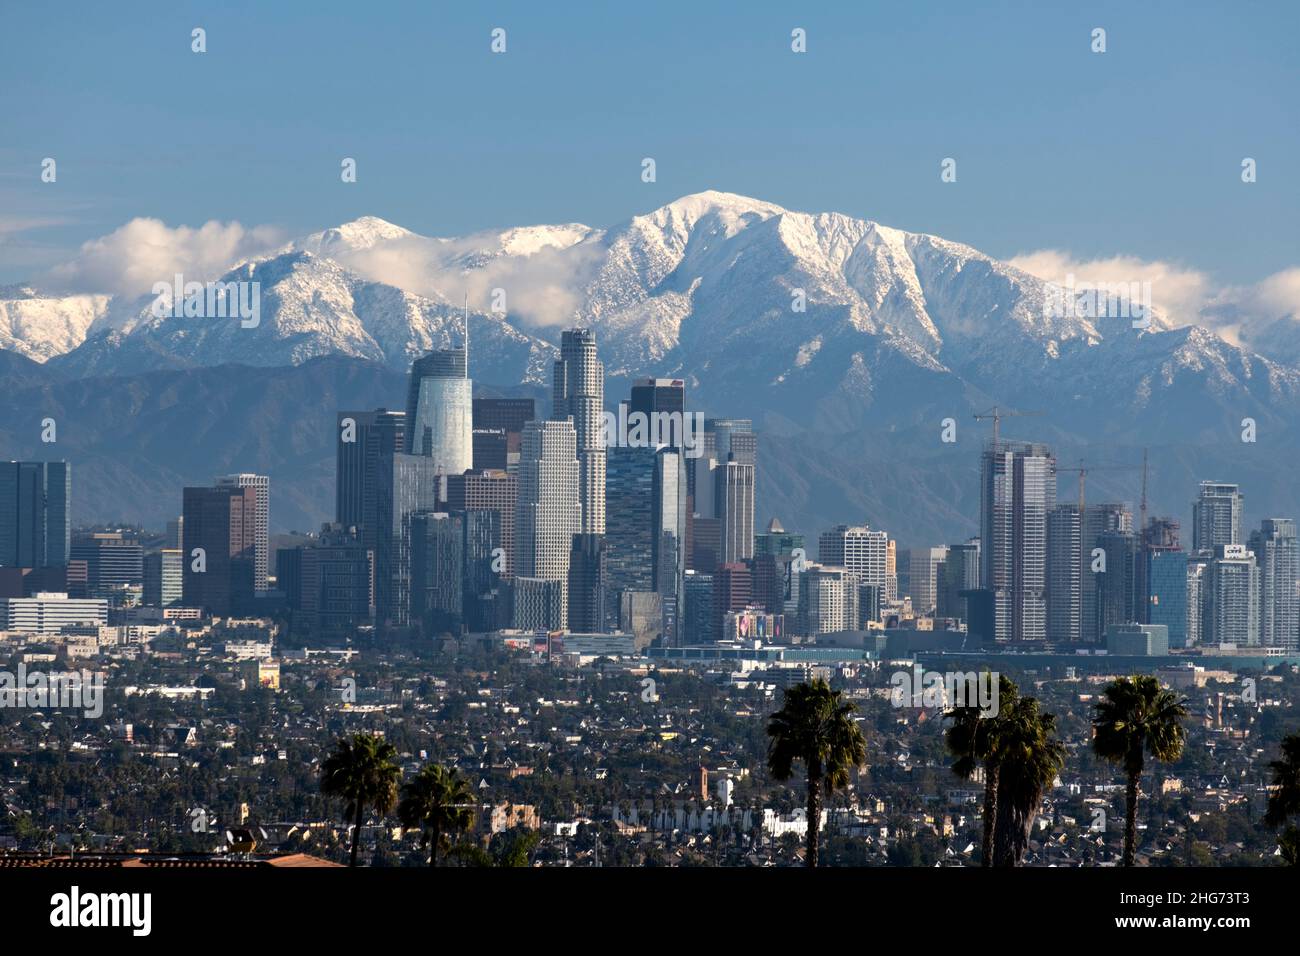 Skyline der Innenstadt von Los Angeles an einem klaren Tag mit den San Gabriel Mountains und Mt. Baldy mit Schnee bedeckt Stockfoto